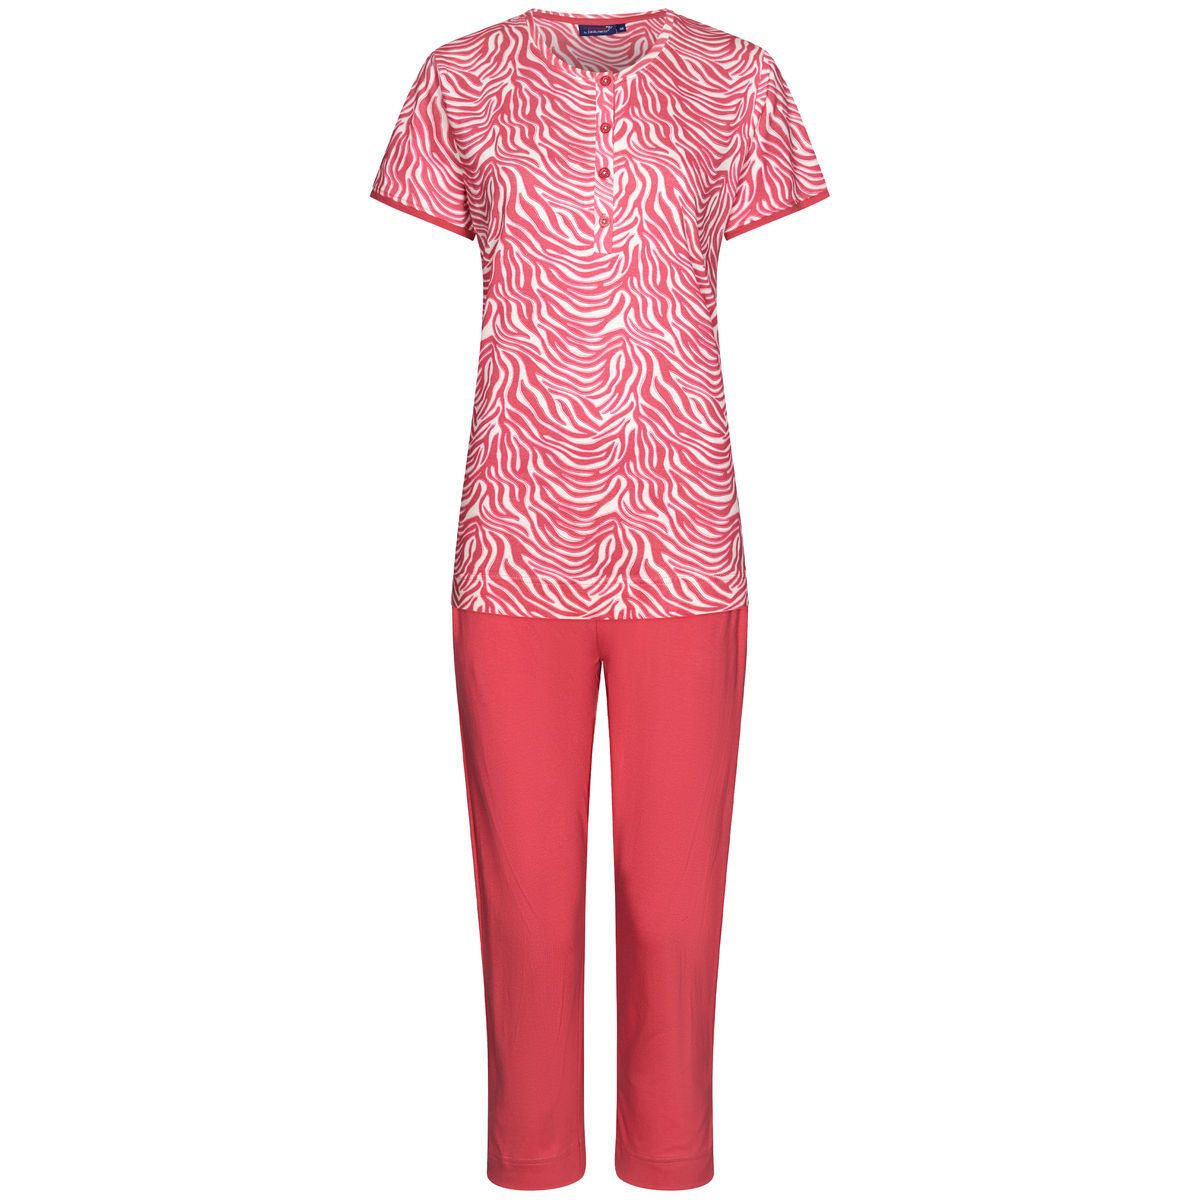 Rebelle pyjama met knoopsluiting en roze zebrastrepen  - 21241-426-4 - donker roze